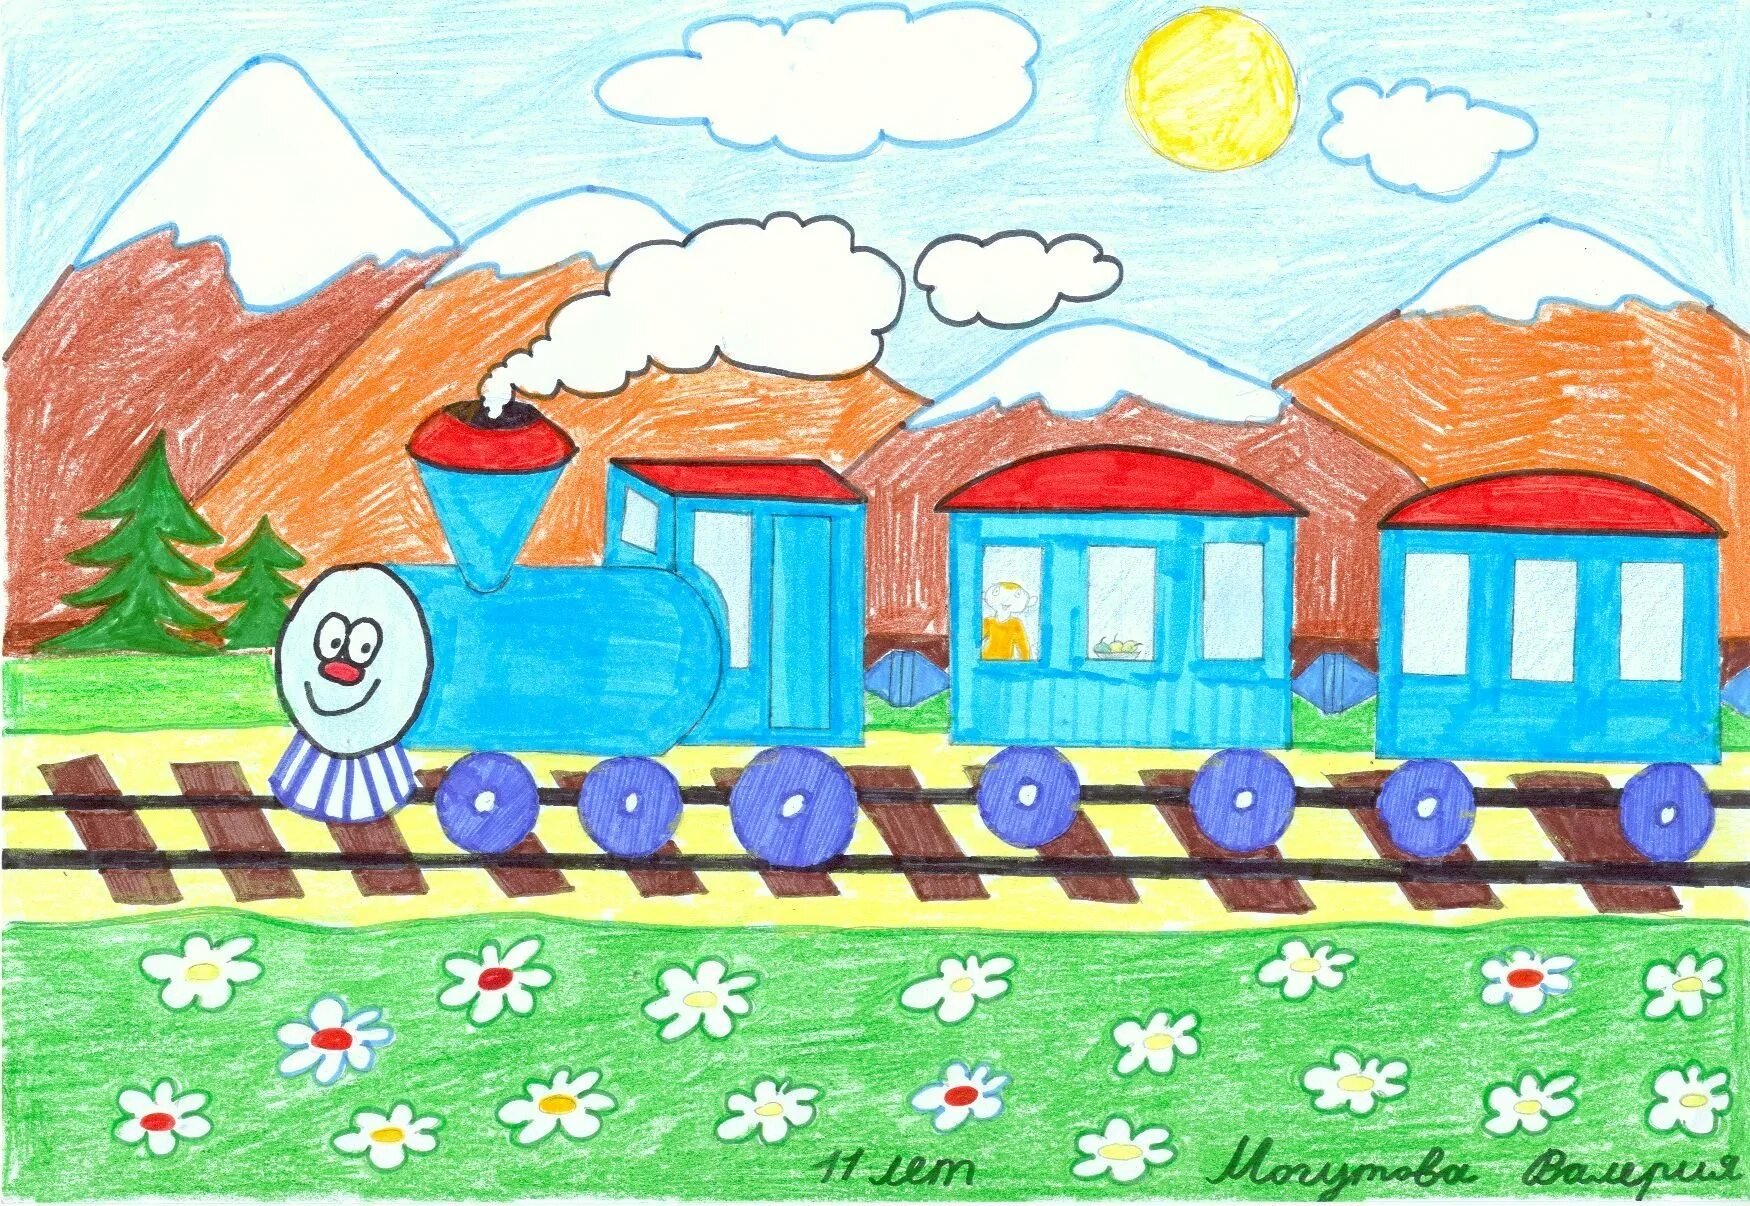 Как нарисовать игрушечную железную дорогу